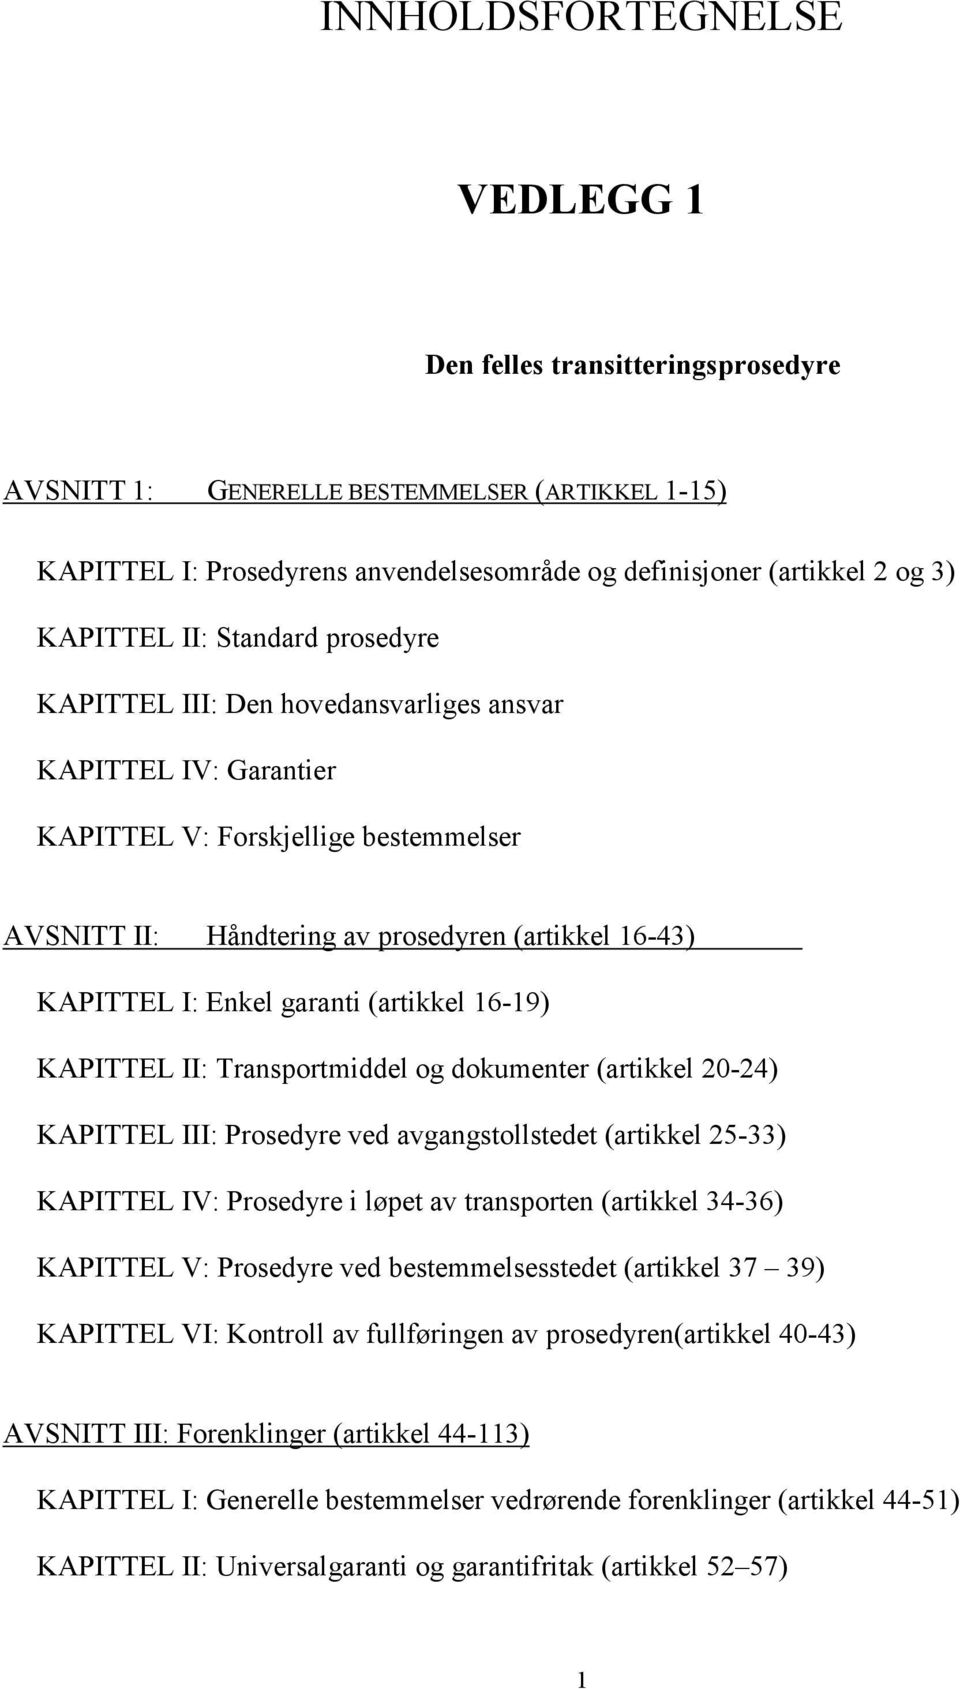 garanti (artikkel 16-19) KAPITTEL II: Transportmiddel og dokumenter (artikkel 20-24) KAPITTEL III: Prosedyre ved avgangstollstedet (artikkel 25-33) KAPITTEL IV: Prosedyre i løpet av transporten